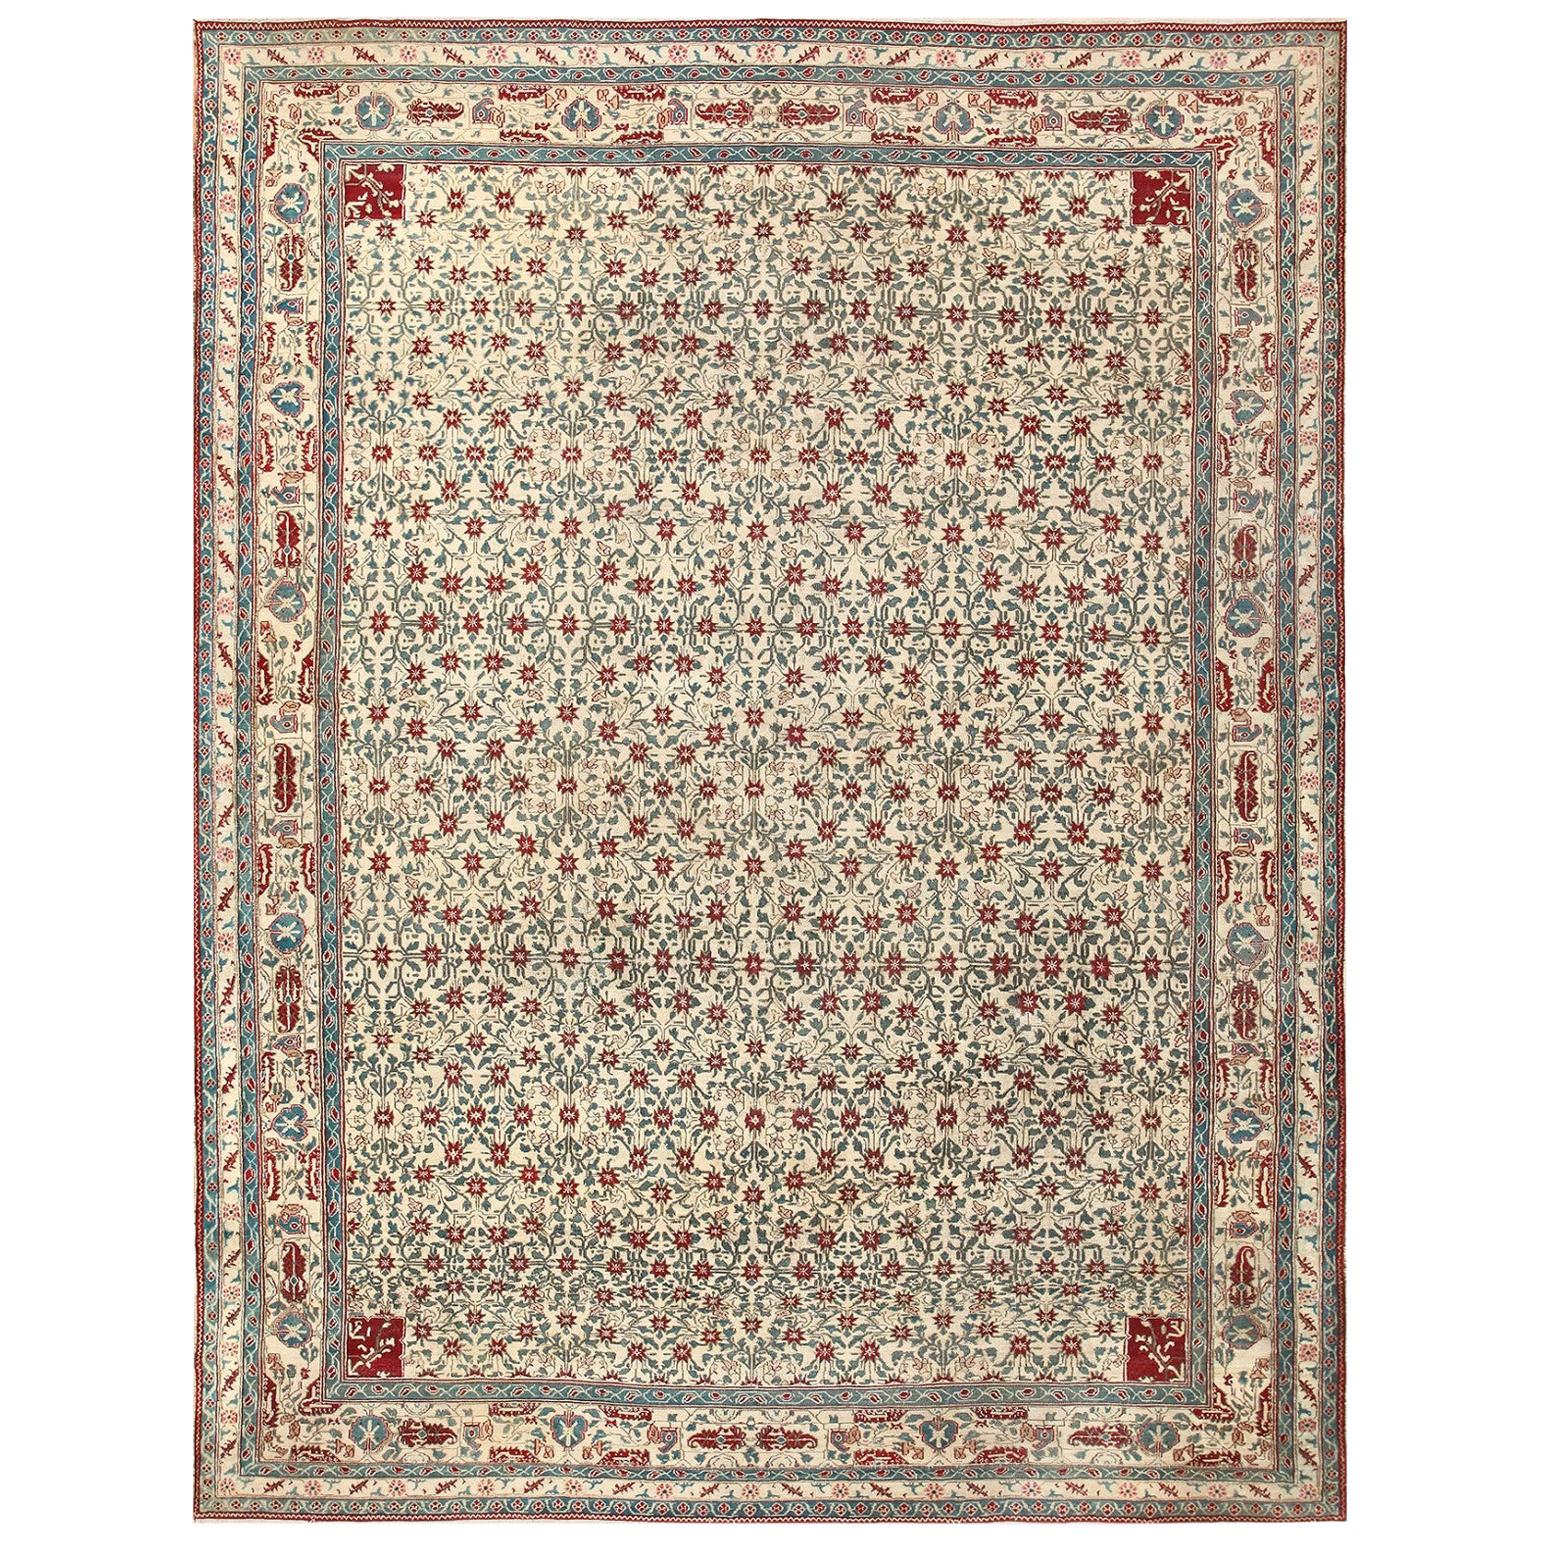 Antiker indischer Agra-Teppich. Größe: 8 ft 10 in x 11 ft 6 in